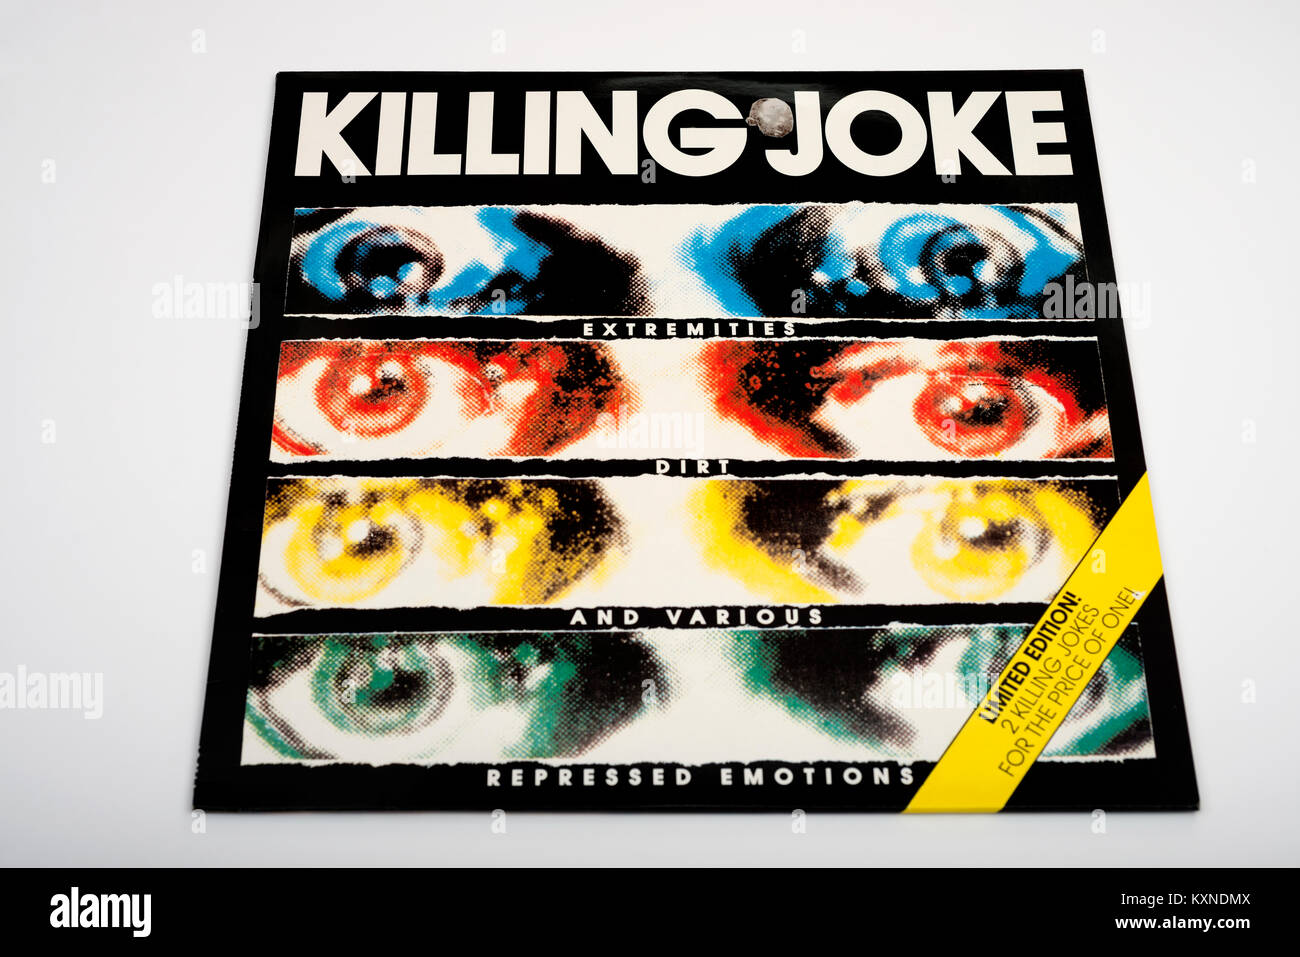 Extrémités de Killing Joke et saletés diverses émotions réprimées Banque D'Images